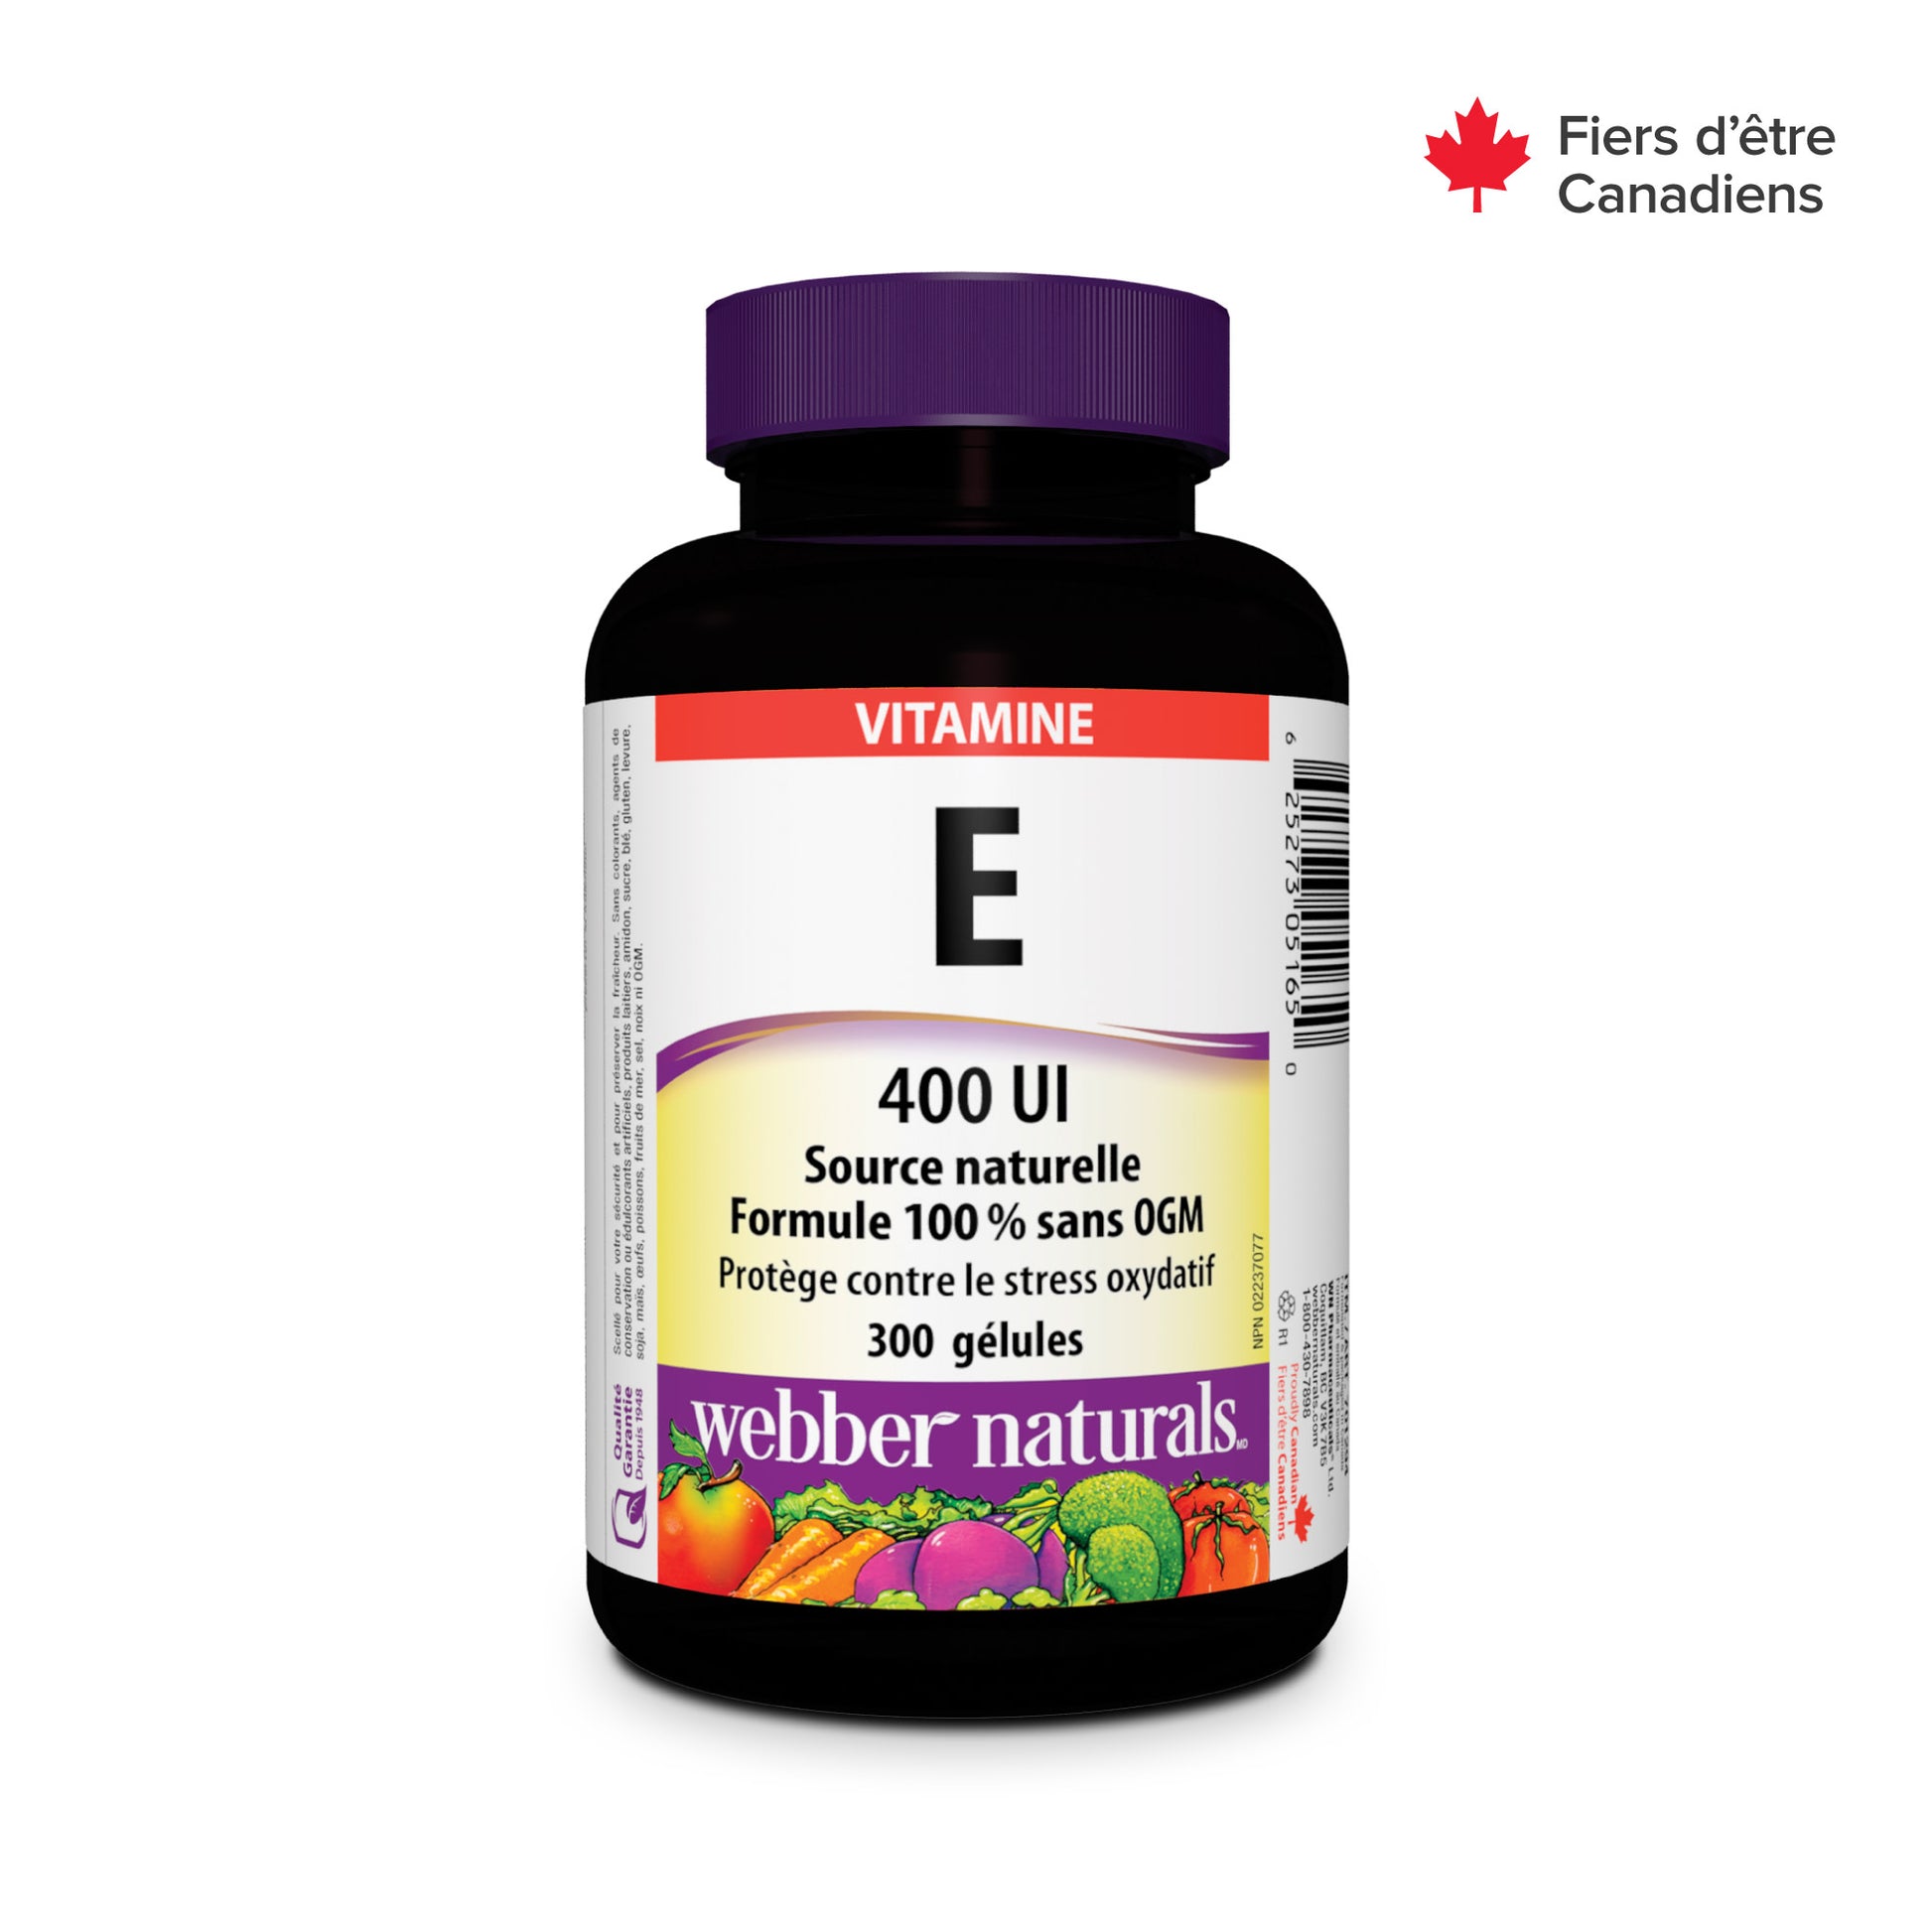 Vitamin E 400 IU Softgels for Webber Naturals|v|hi-res|WN5165